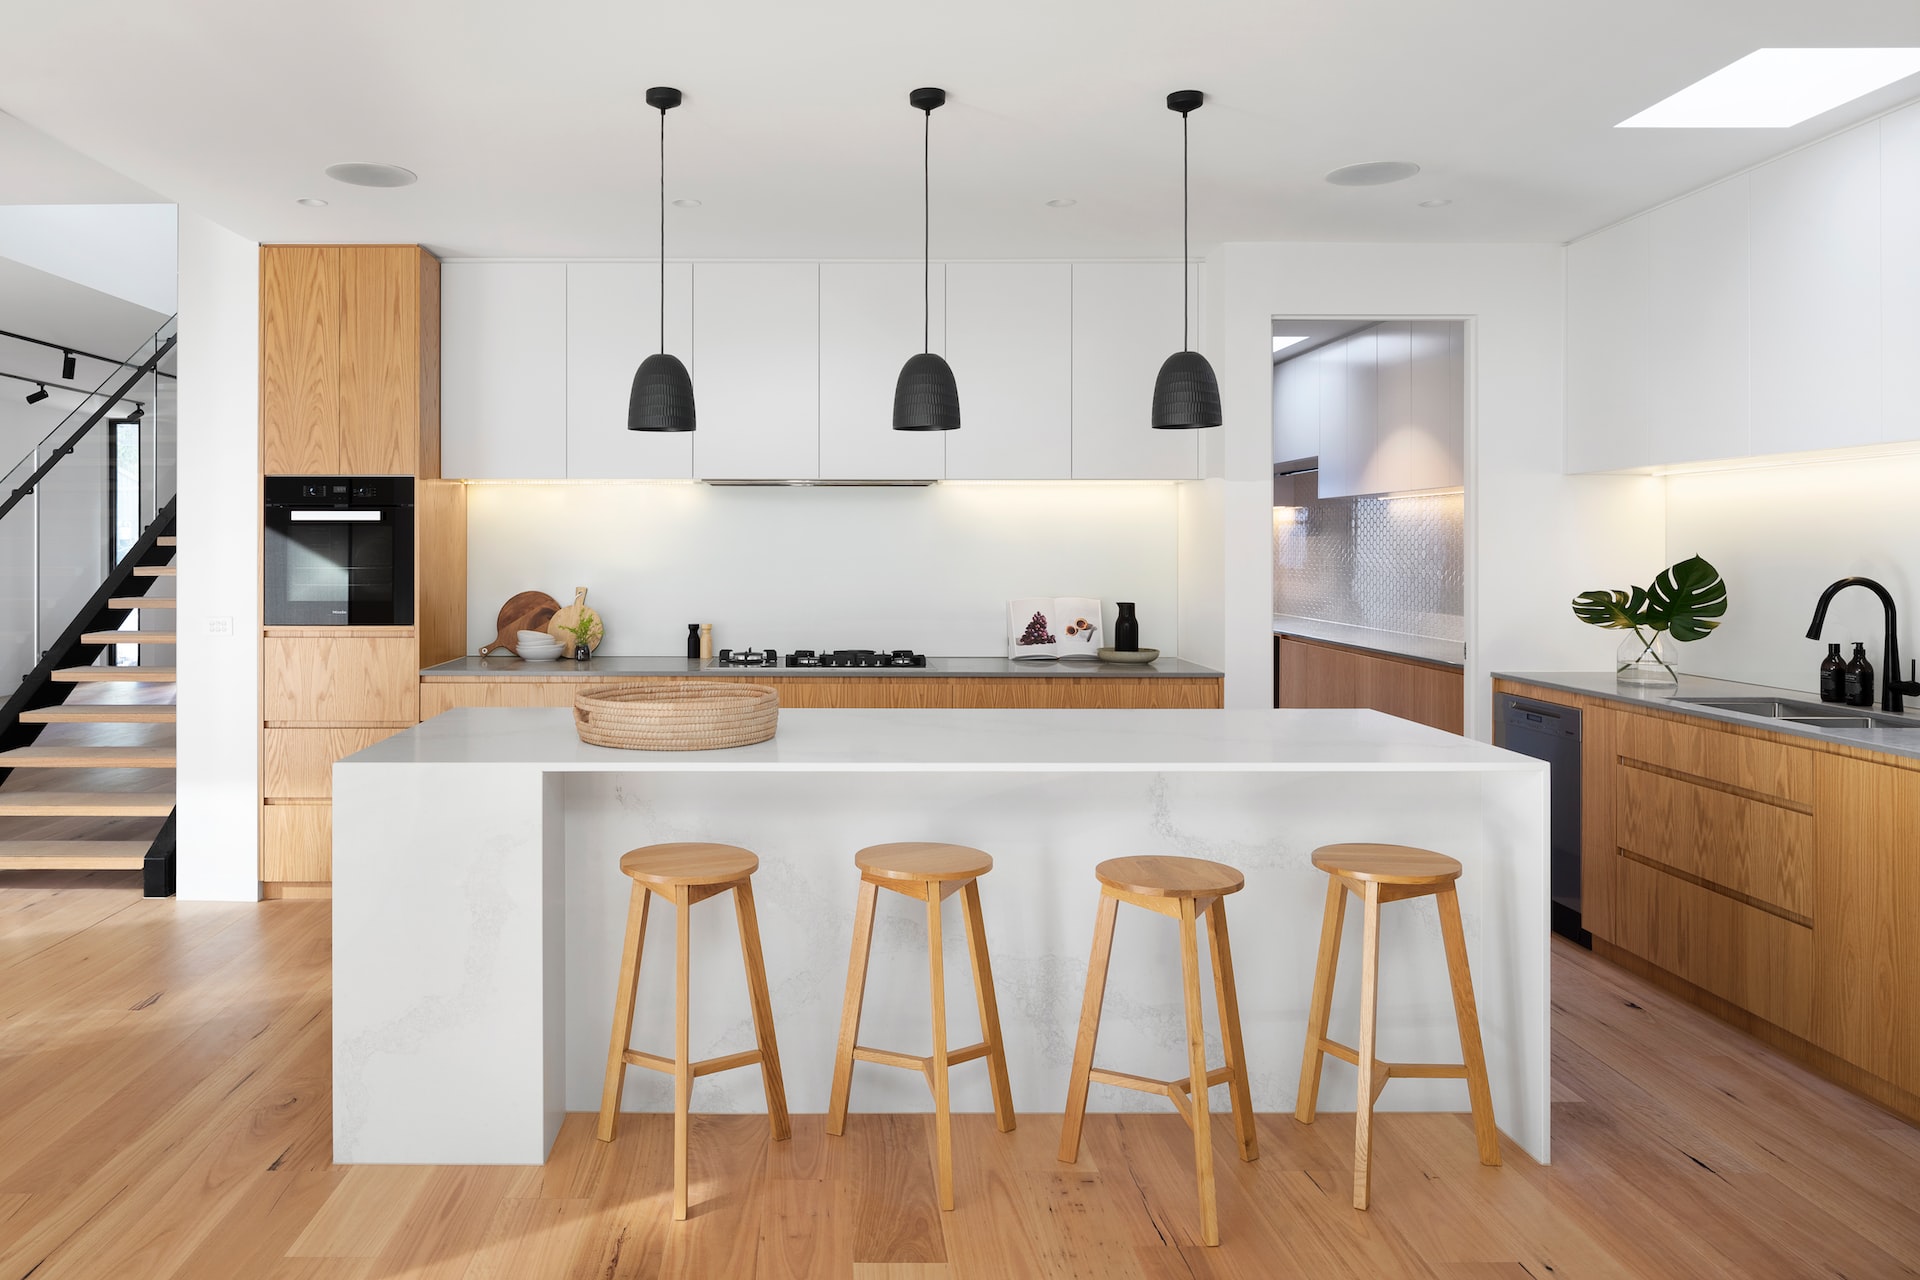 Modern kitchen design with wood undertones